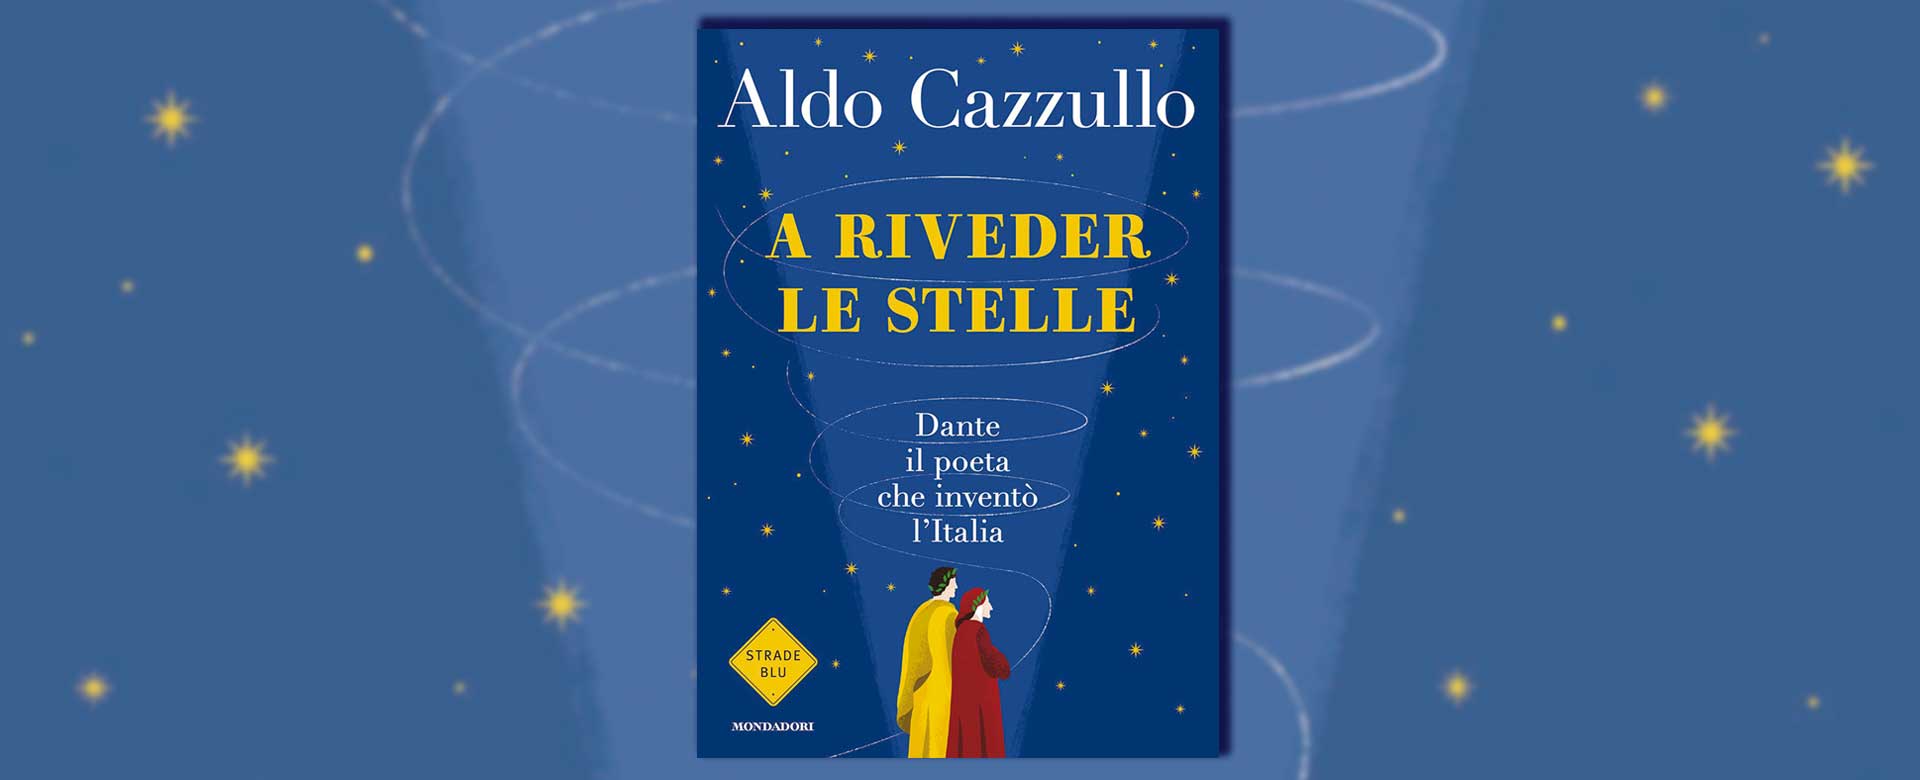 Immagine del libro A riveder le stelle di Aldo Cazzullo